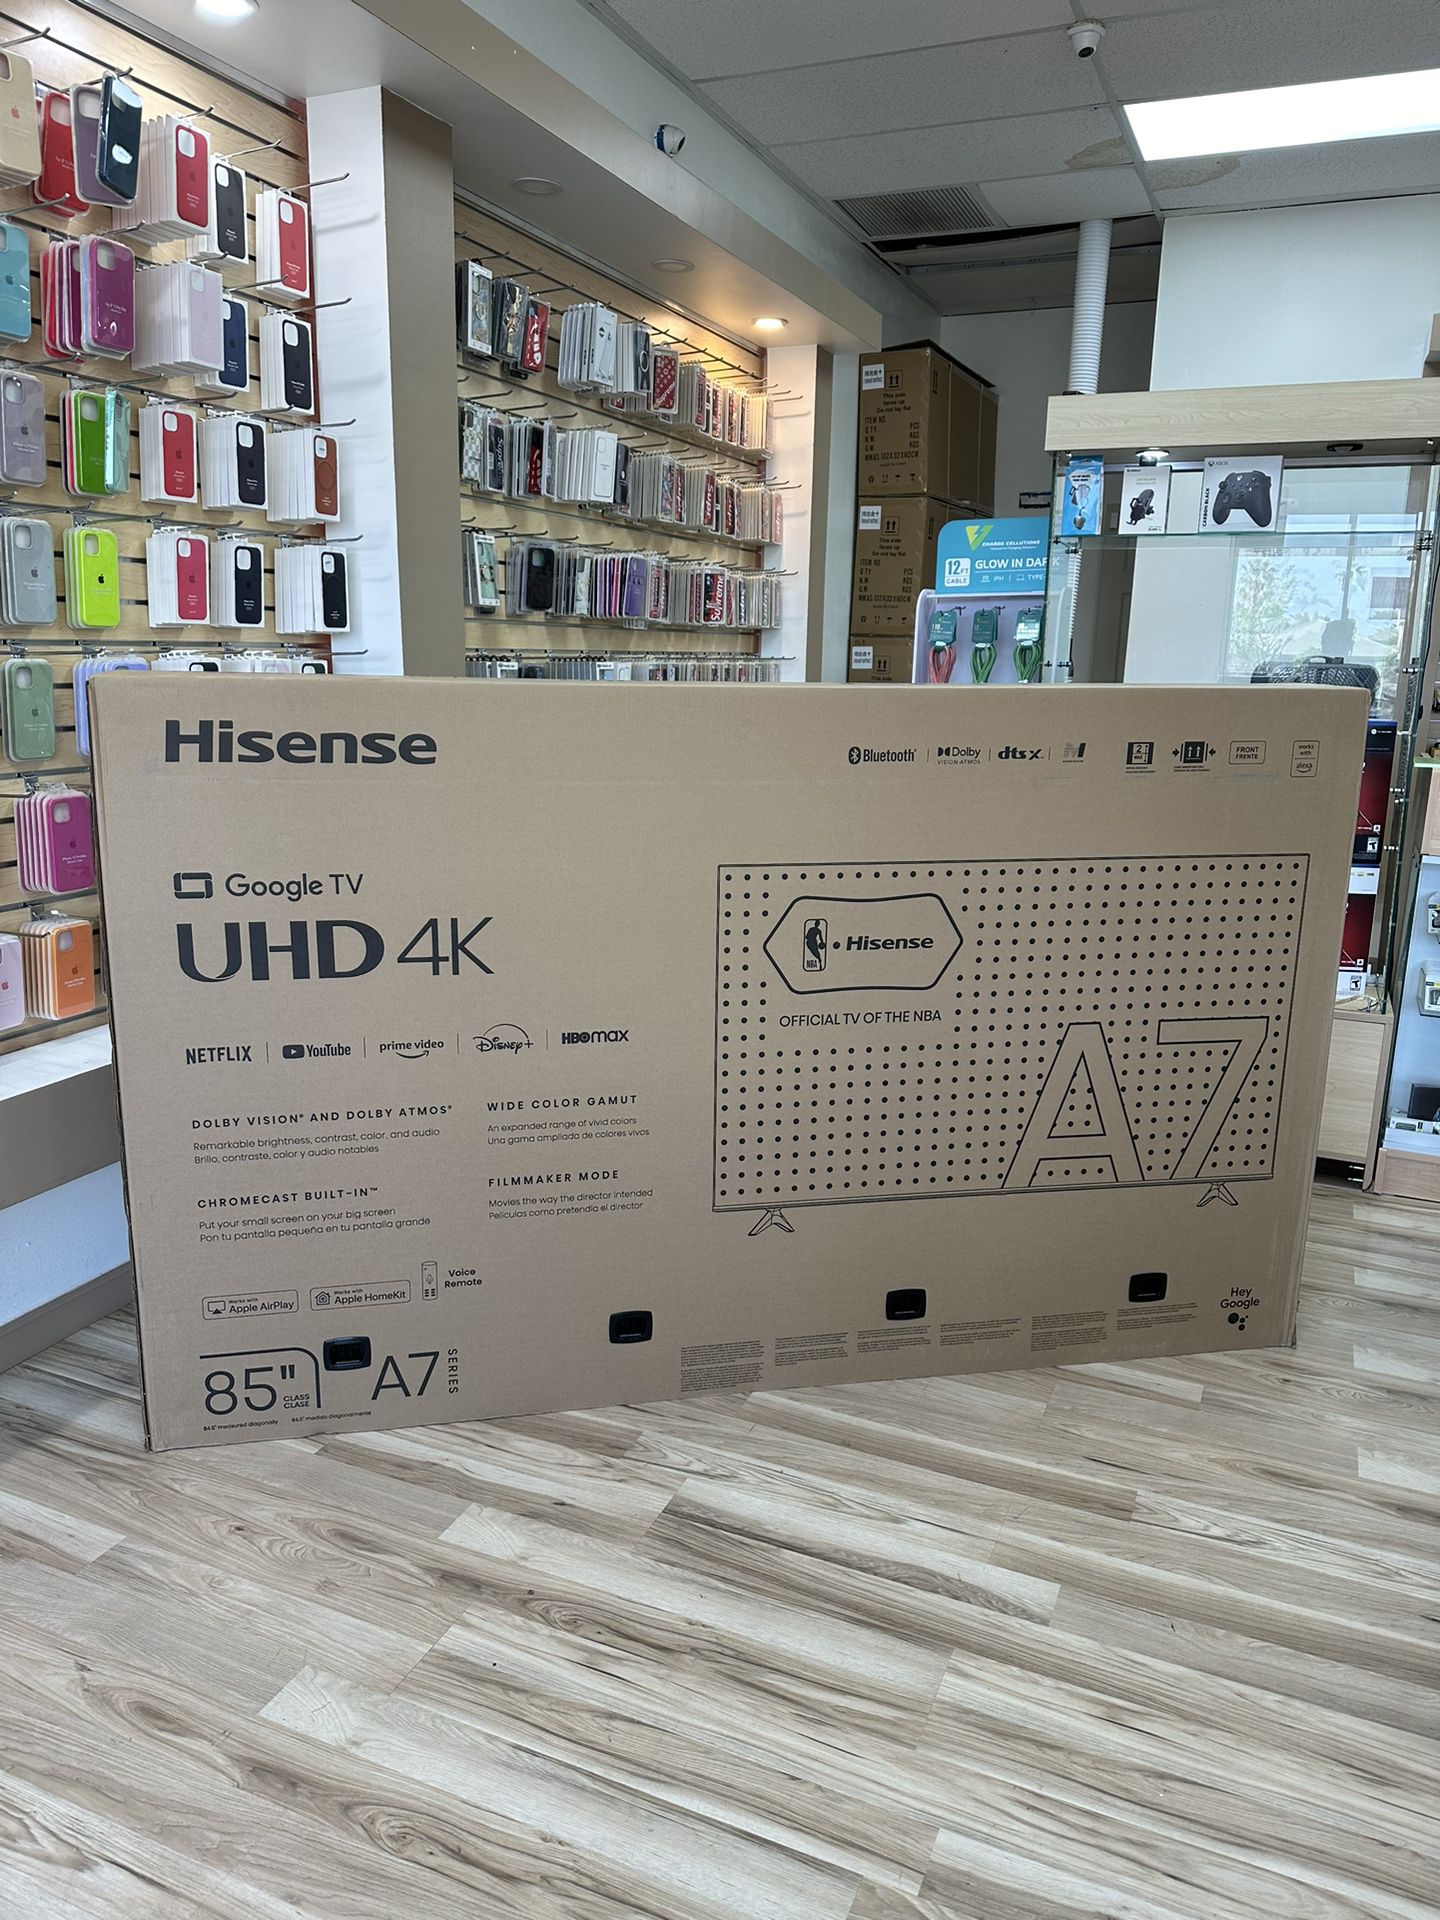 Hisense 85” TV